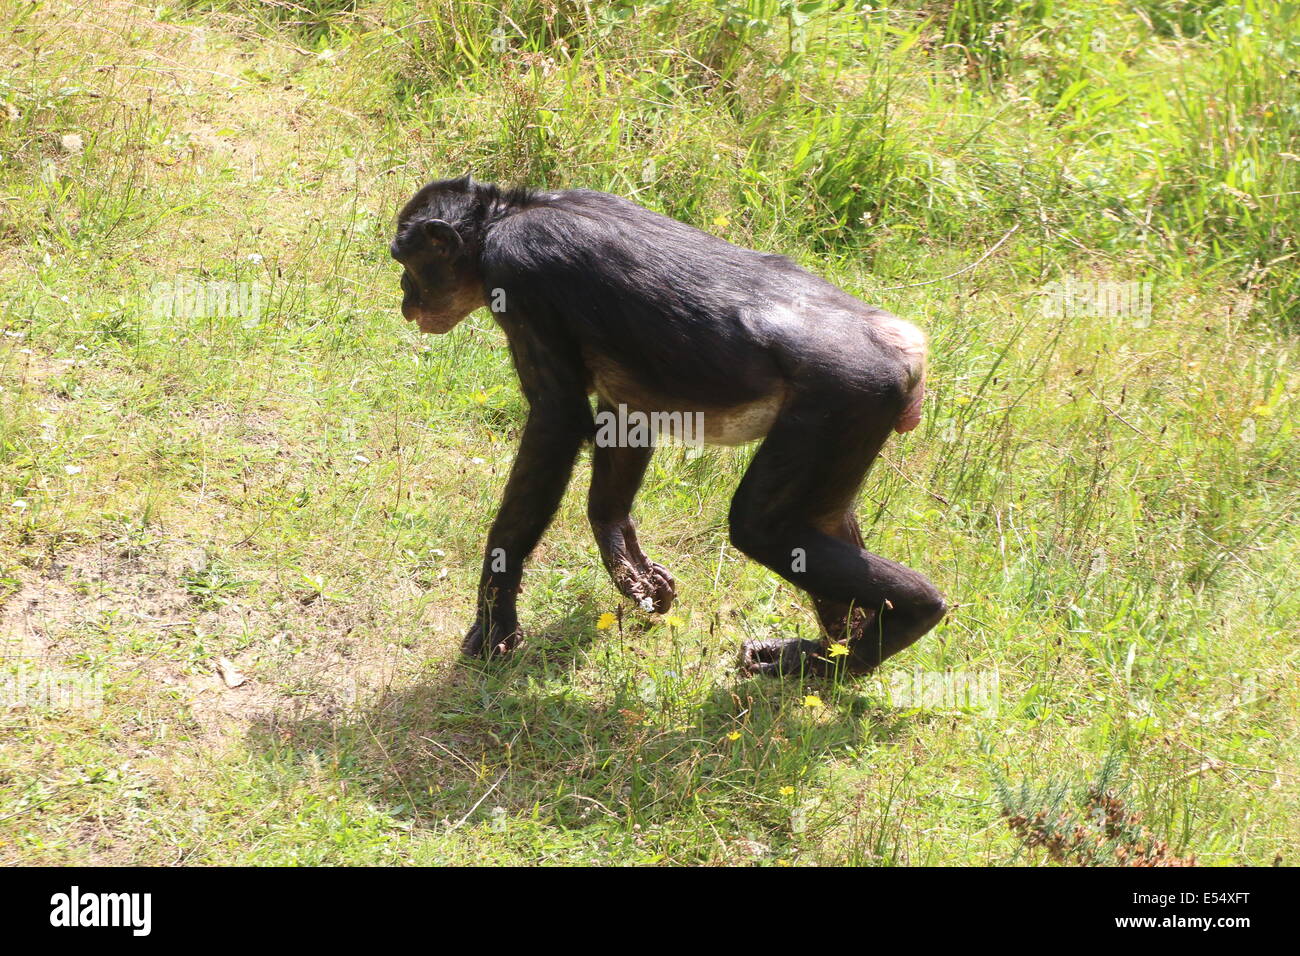 Hembras maduras (anteriormente) el bonobo o chimpancé pigmeo (Pan paniscus) caminando en un entorno natural Foto de stock